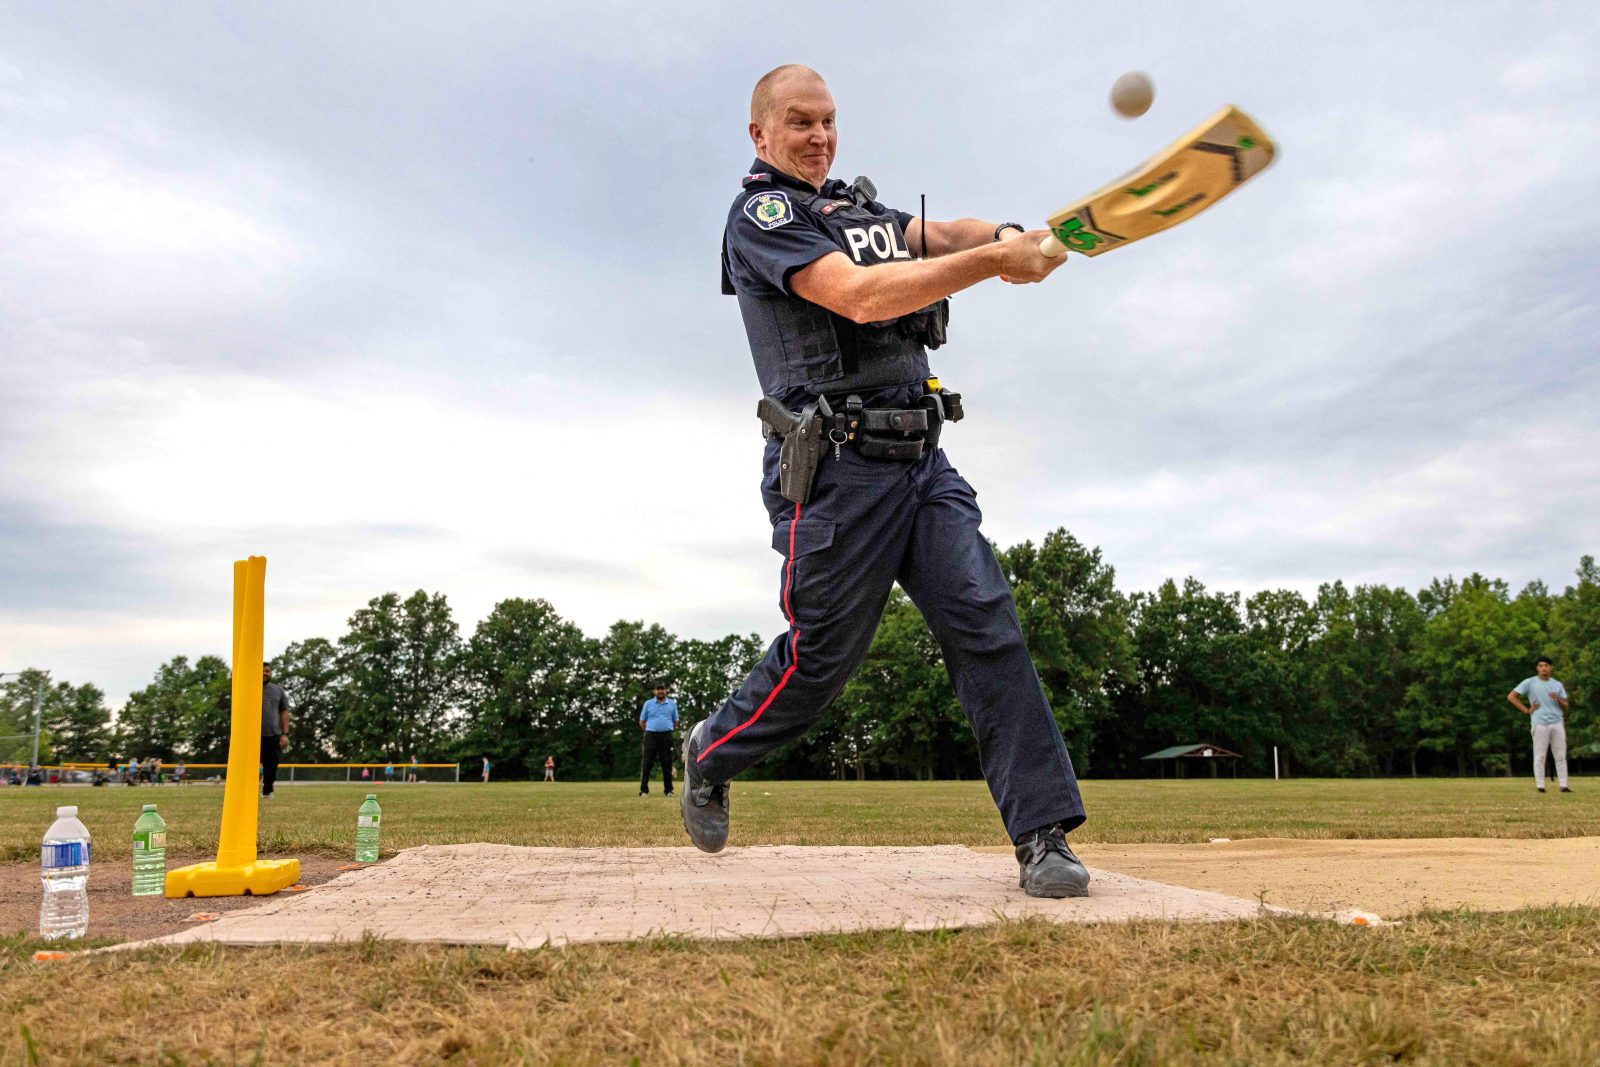 A police officer swings a cricket bat in a field.